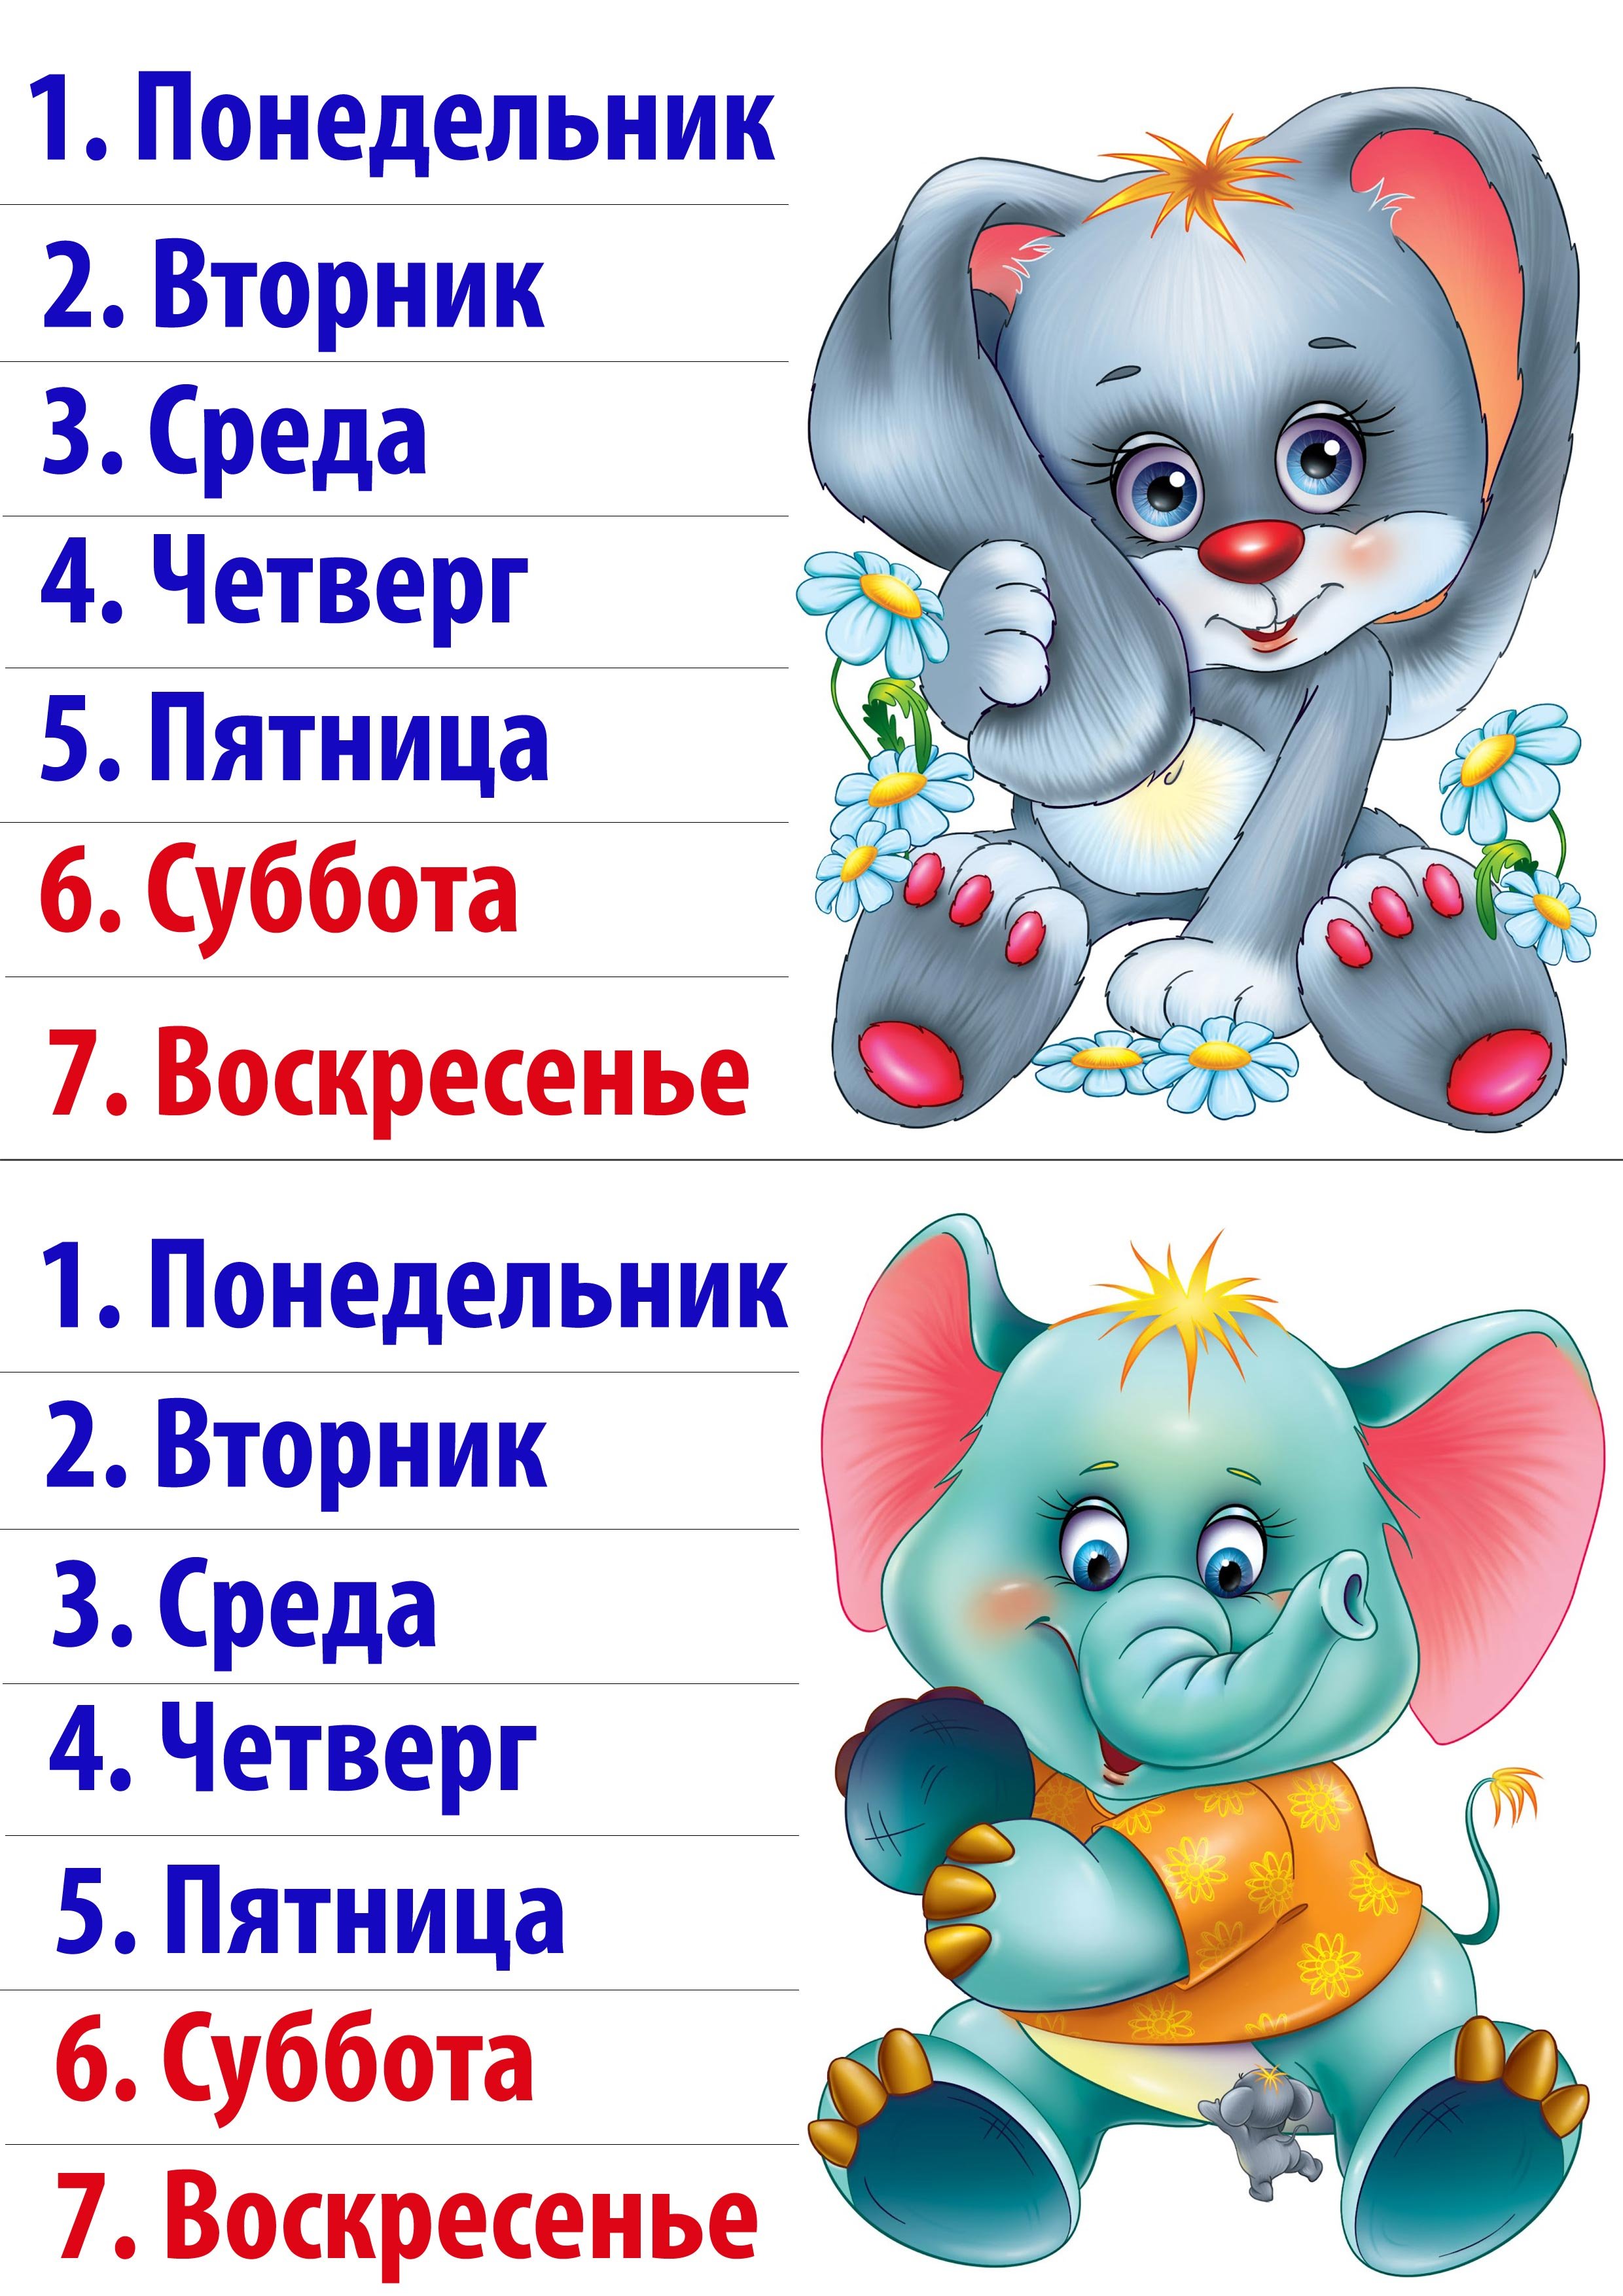 дни недели на русском языке картинки